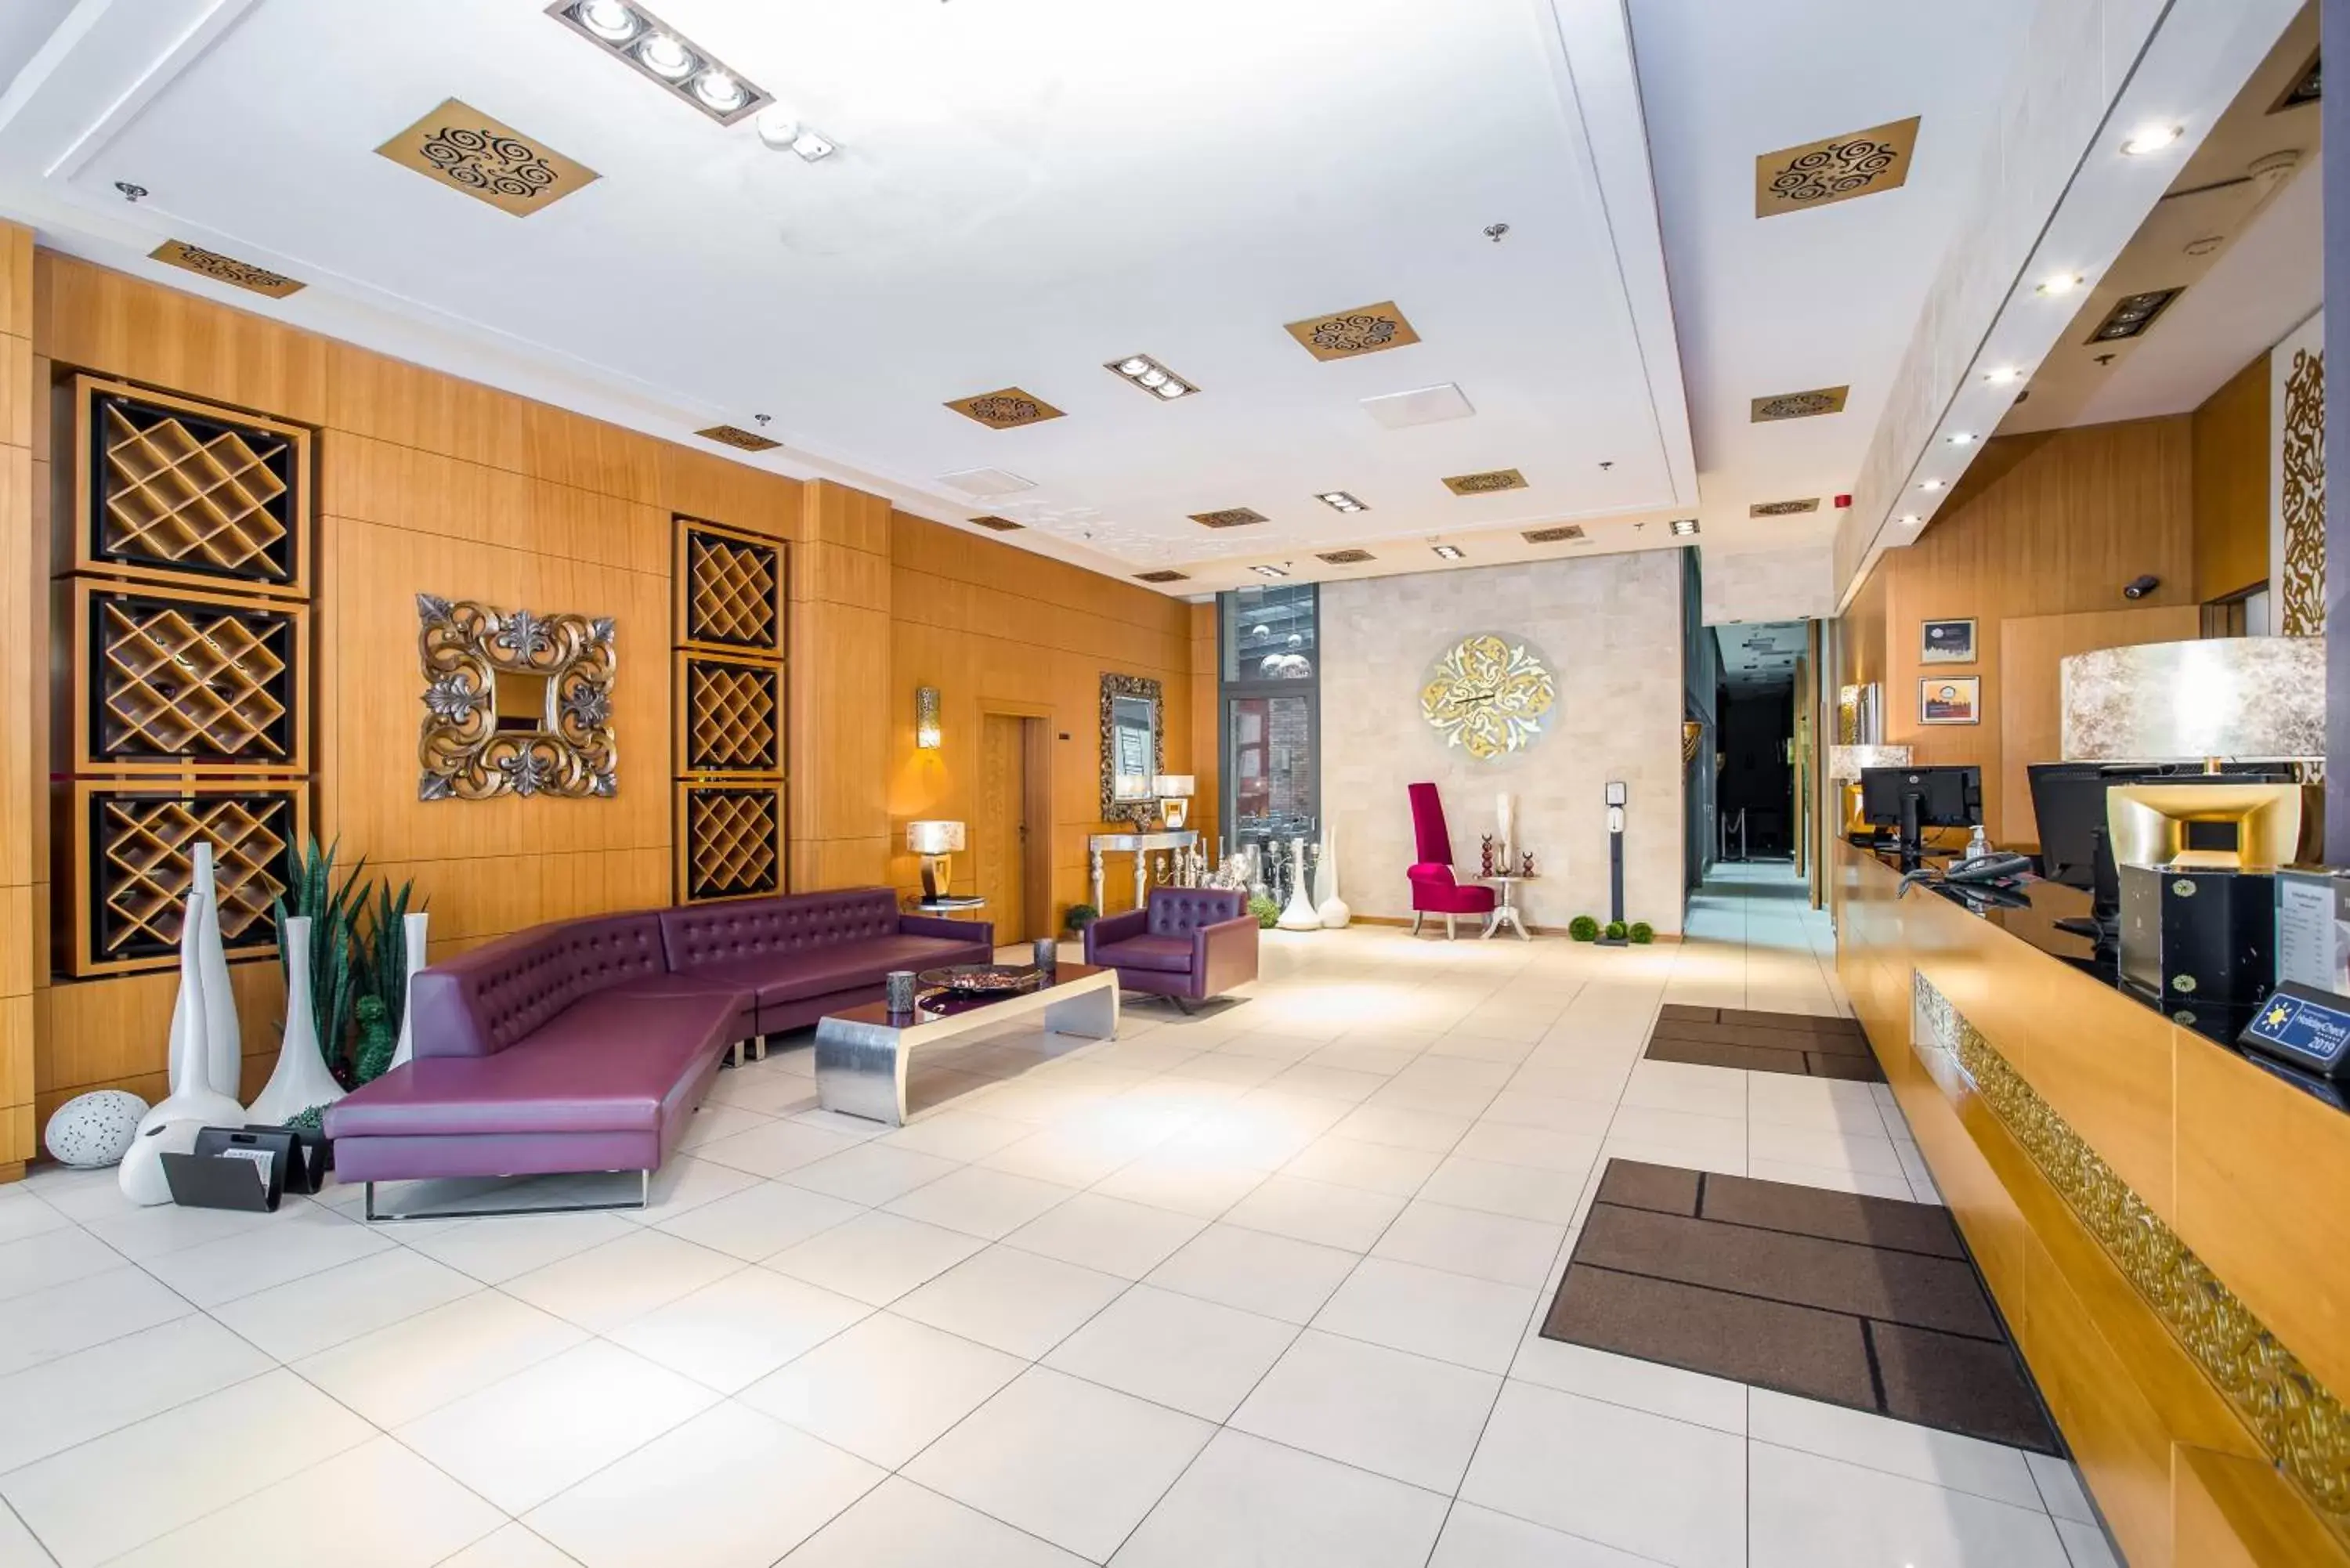 Lobby or reception, Lobby/Reception in Marmara Hotel Budapest